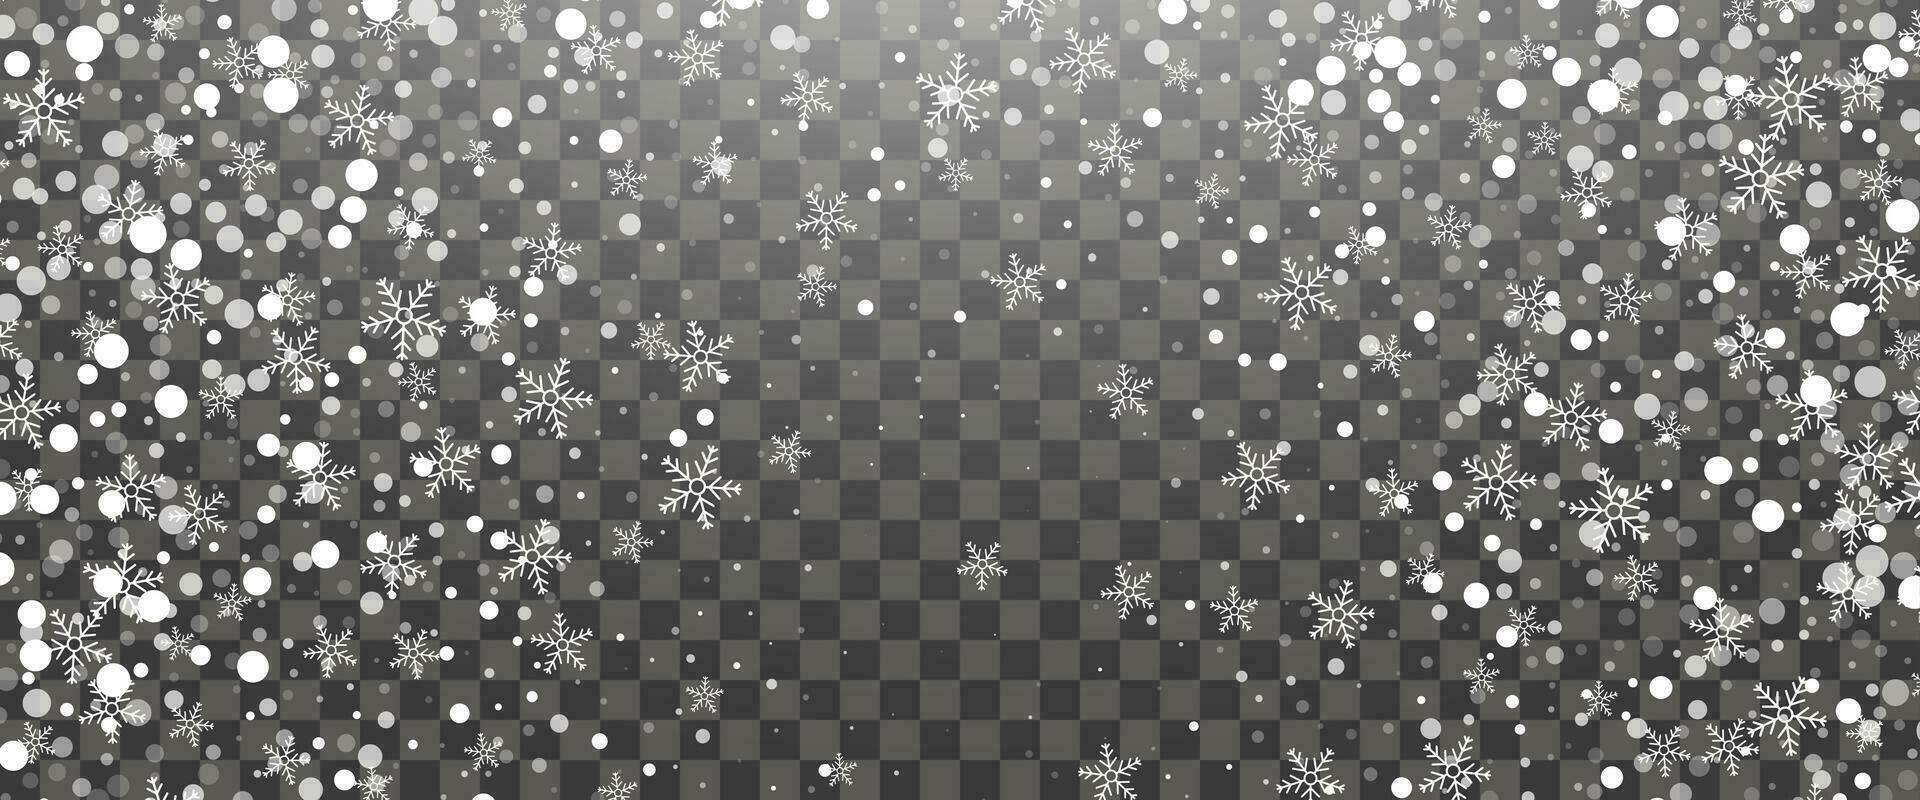 snöfall och faller snöflingor på bakgrund. vit snöflingor och jul snö. vektor illustration